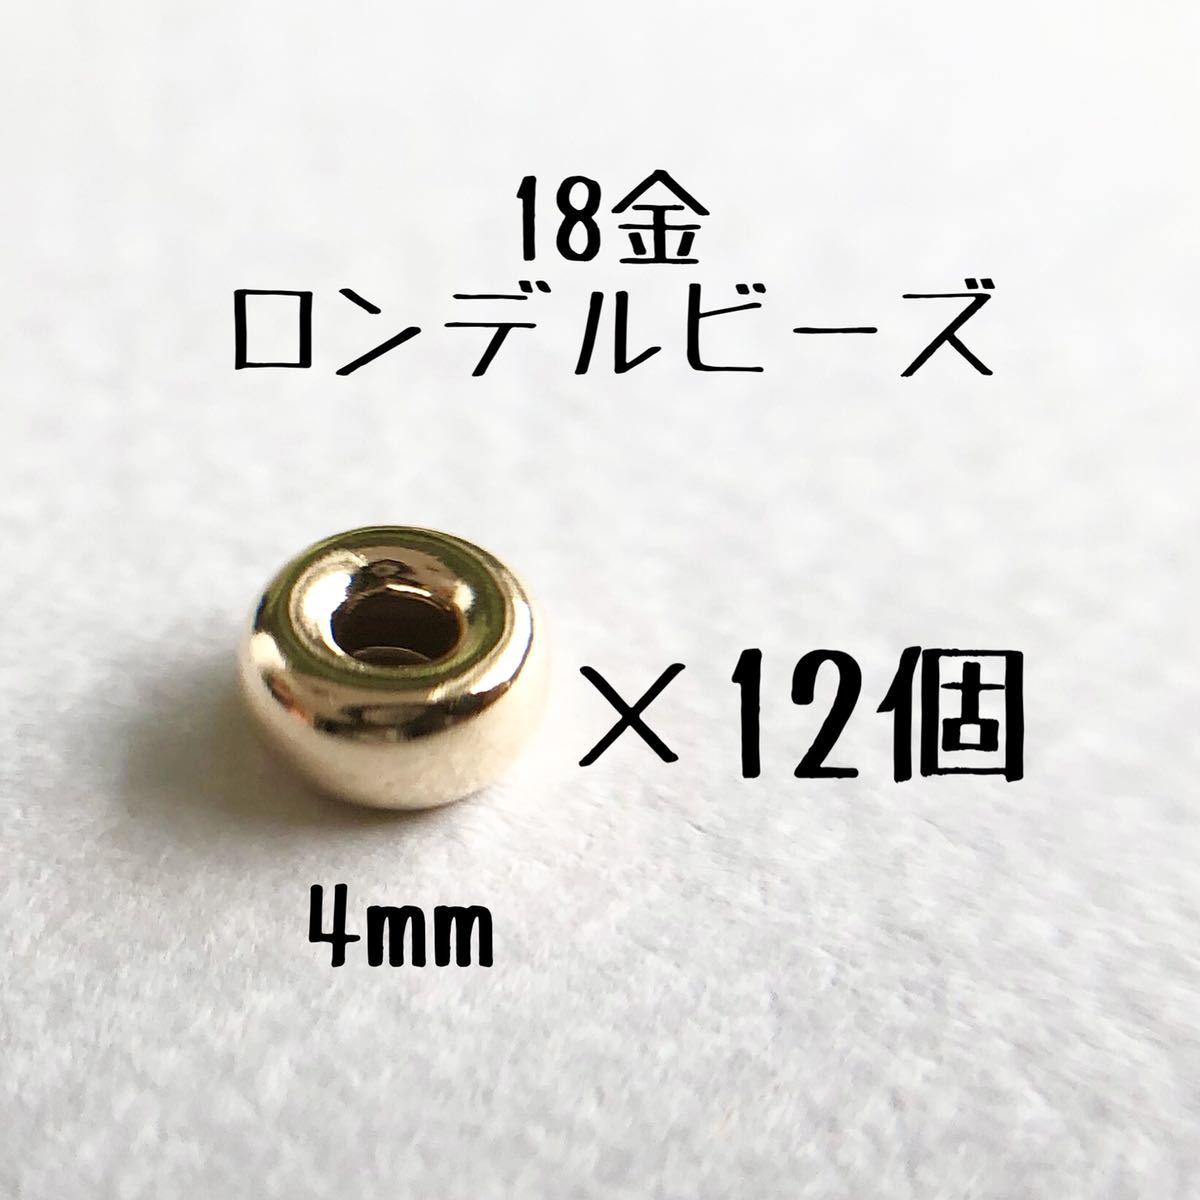 18K 圆珠 4 毫米 12 颗日本制造 K18 配件零件 18K 扁平珠子 手工配件材料, 手工, 手工艺品, 珠饰, 金属部件